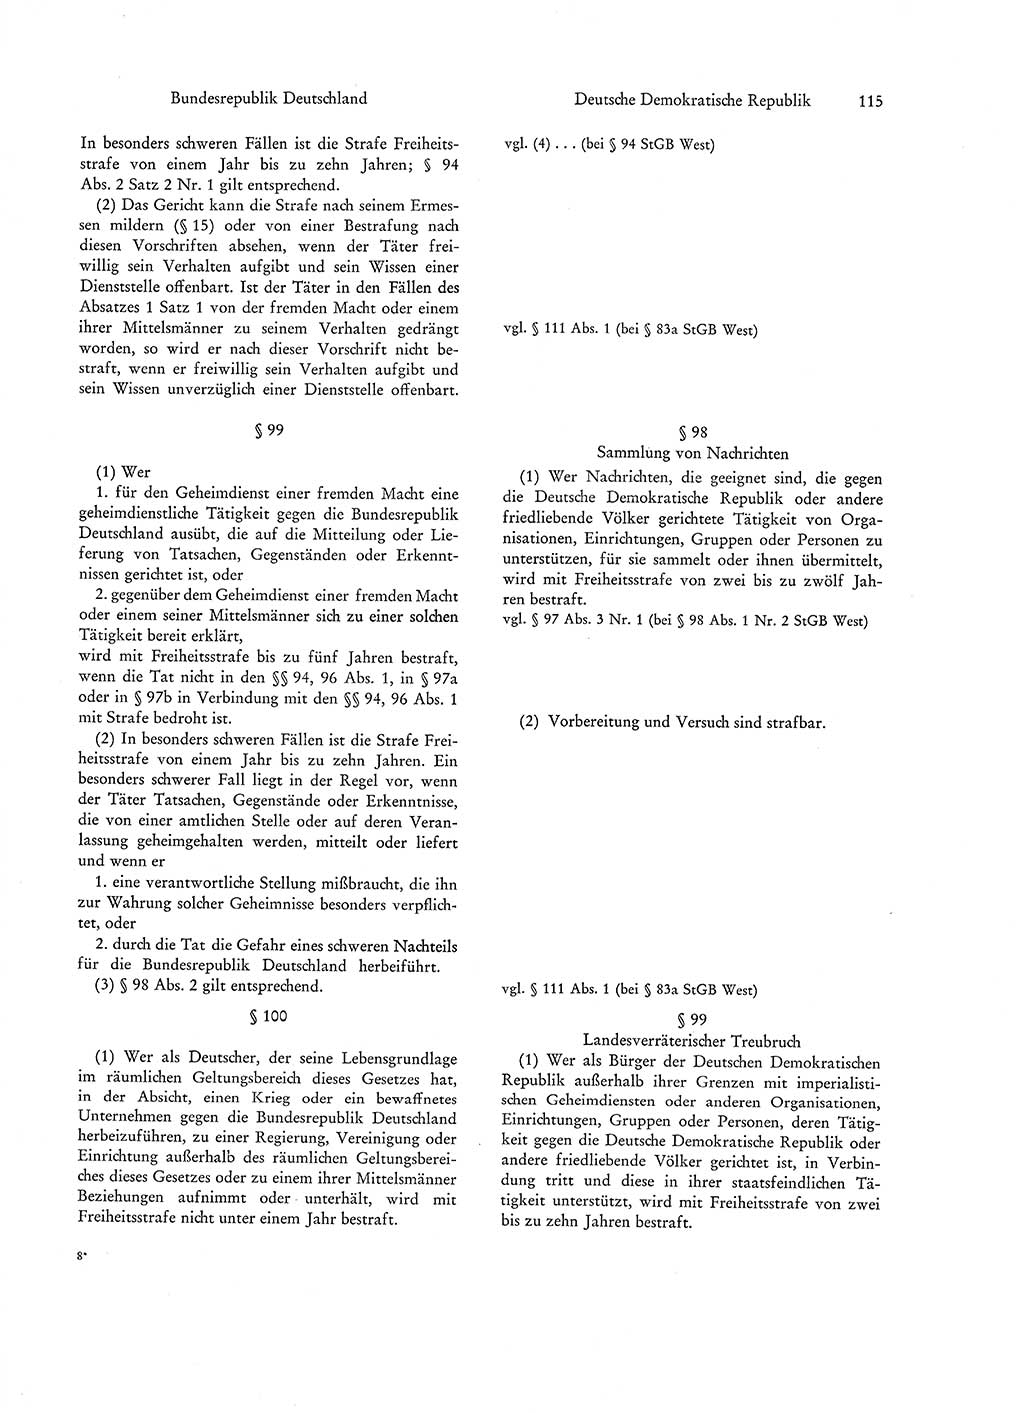 Strafgesetzgebung in Deutschland [Bundesrepublik Deutschland (BRD) und Deutsche Demokratische Republik (DDR)] 1972, Seite 115 (Str.-Ges. Dtl. StGB BRD DDR 1972, S. 115)